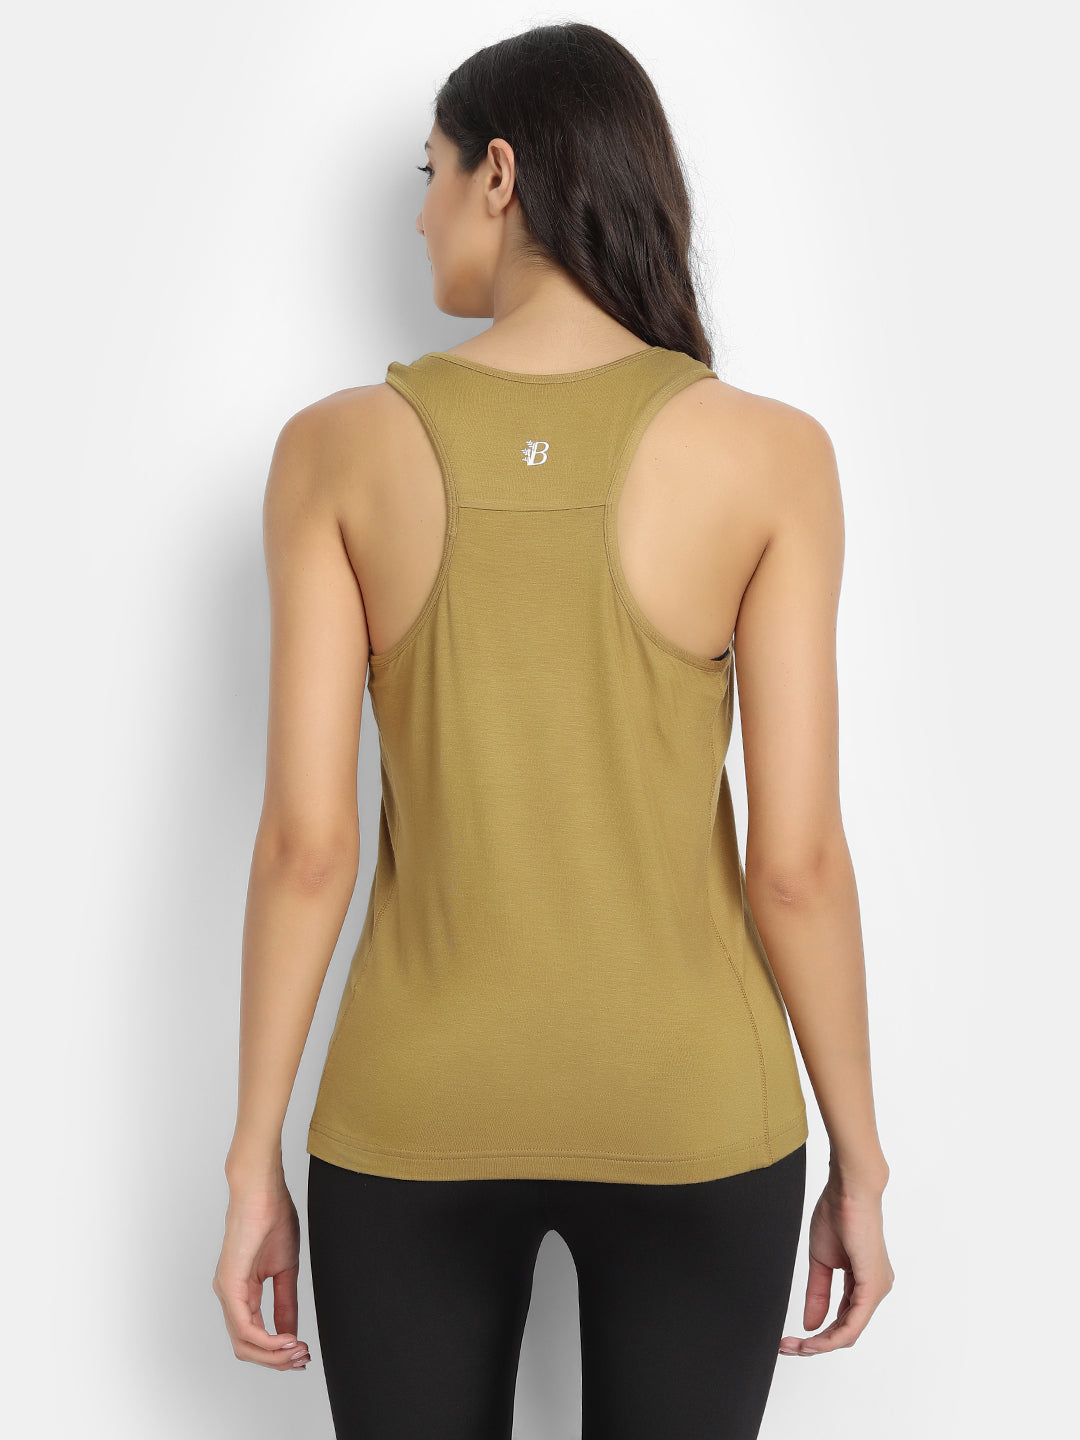 Organic Bamboo Fabric | Runner Vest Top Wemy Store